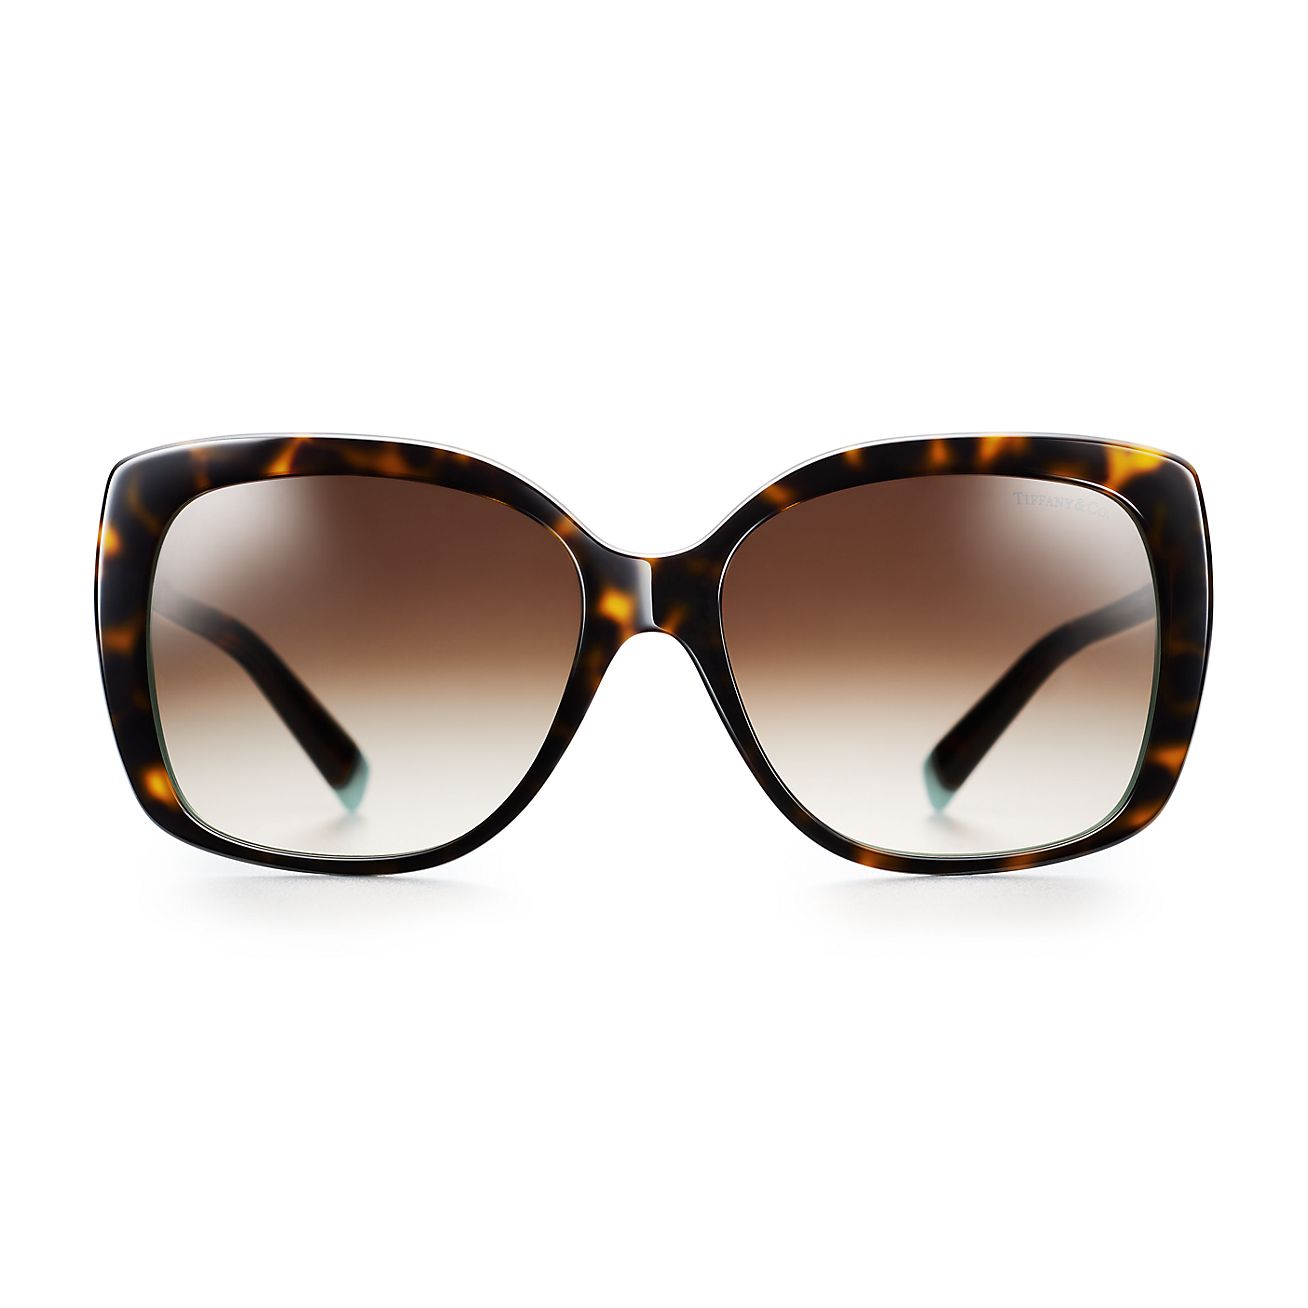 Tiffany T square sunglasses in tortoise 